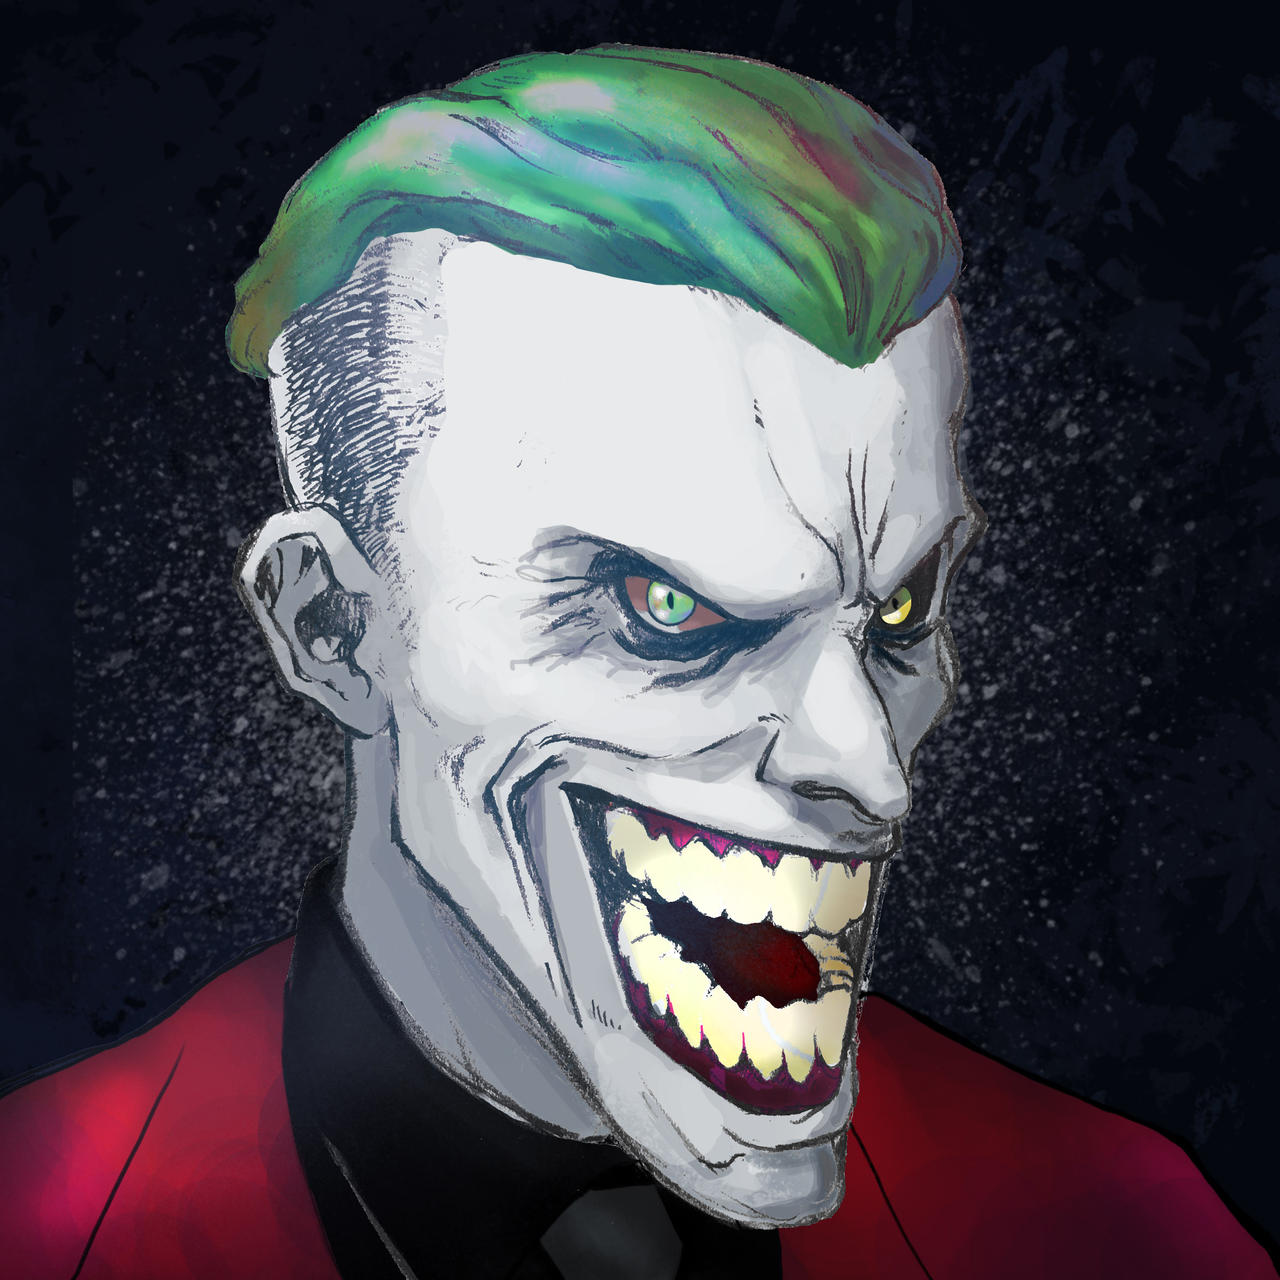 Joker - The death of family by DustBundle on DeviantArt